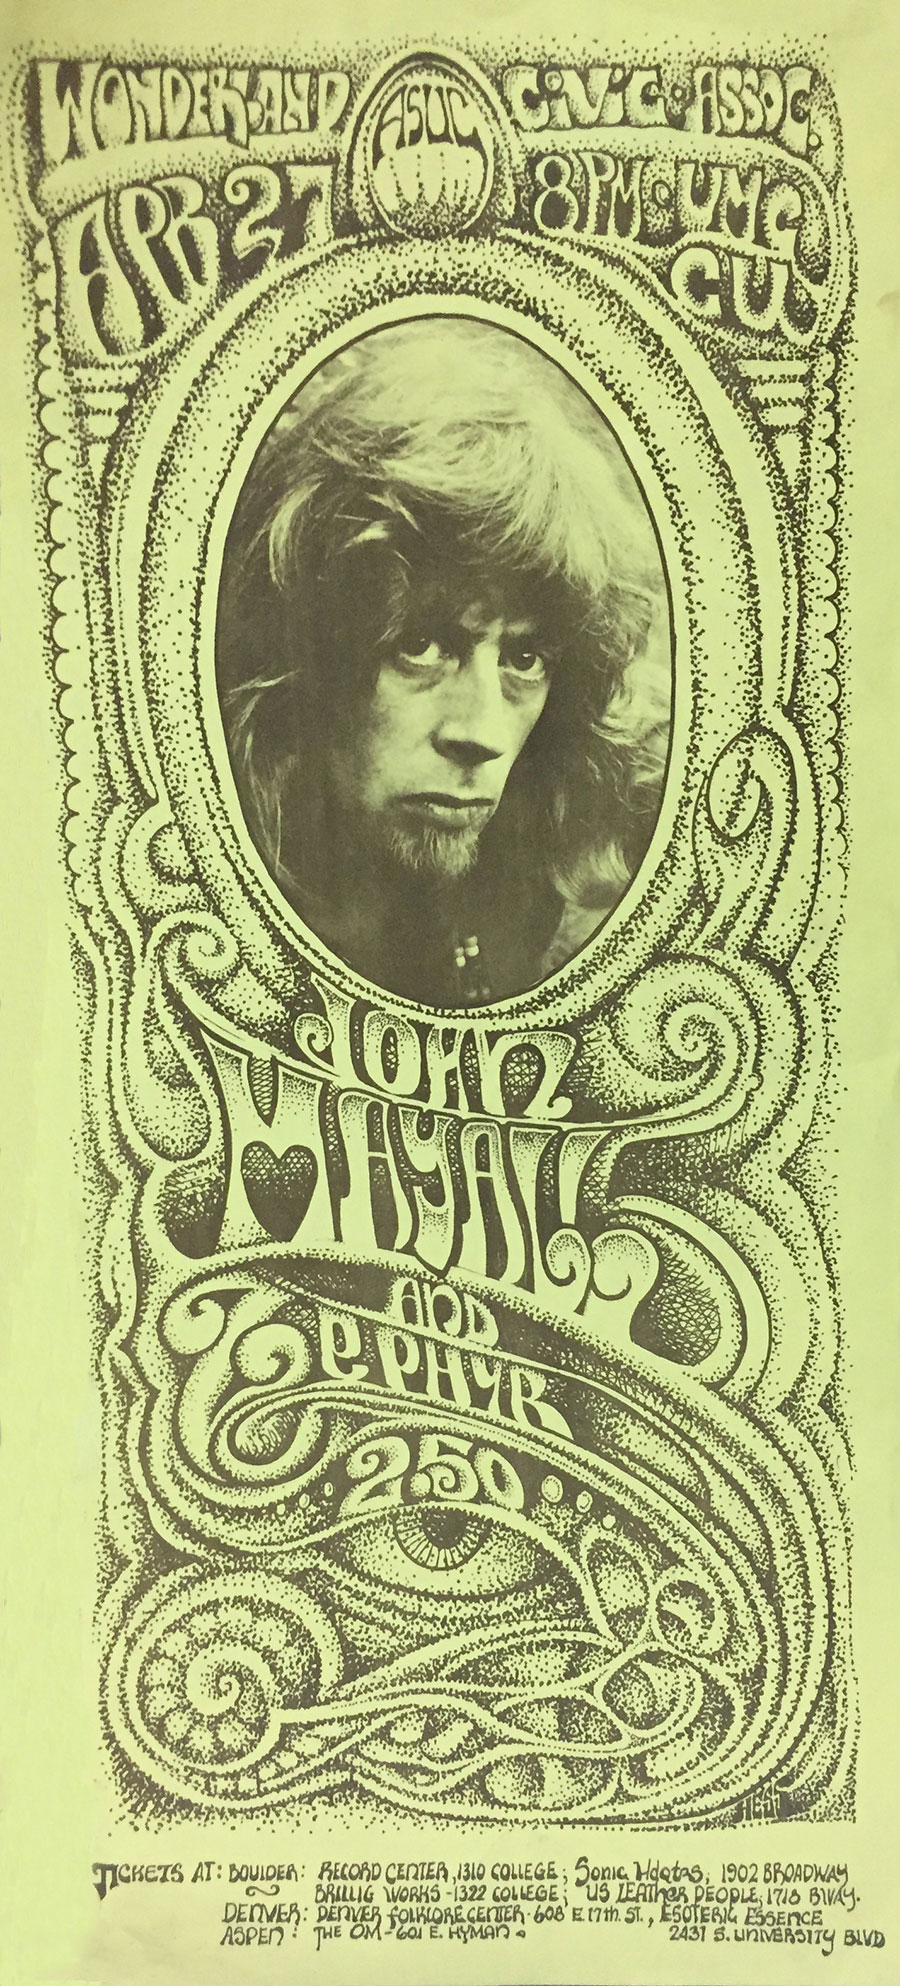 John Mayall and Zephyr poster, 1969